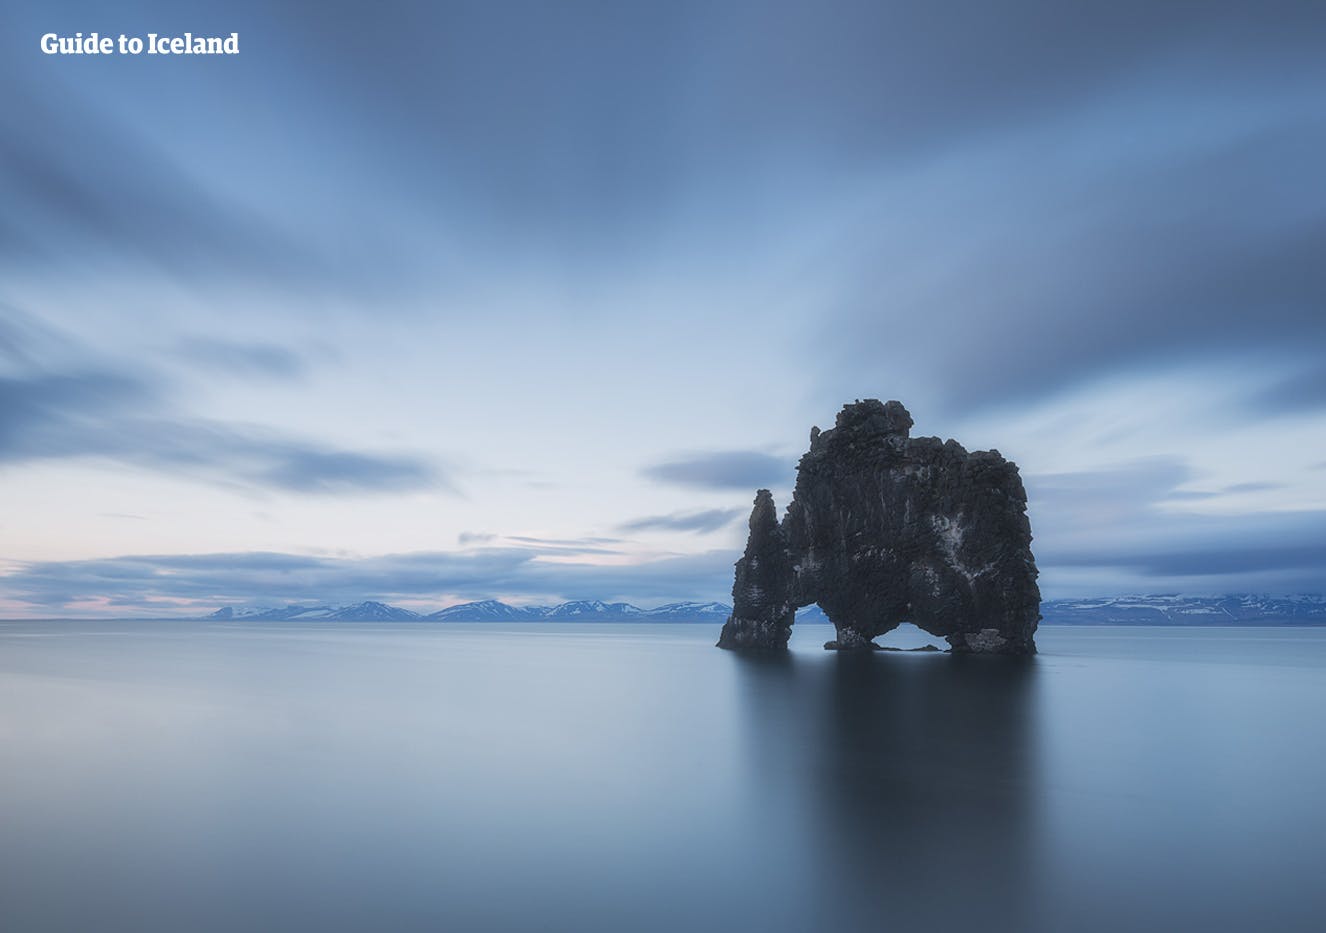 Die dramatische Felsformation Hvítserkur in Nordisland, die wie ein furchterregender Drache aus dem Meer herausragt